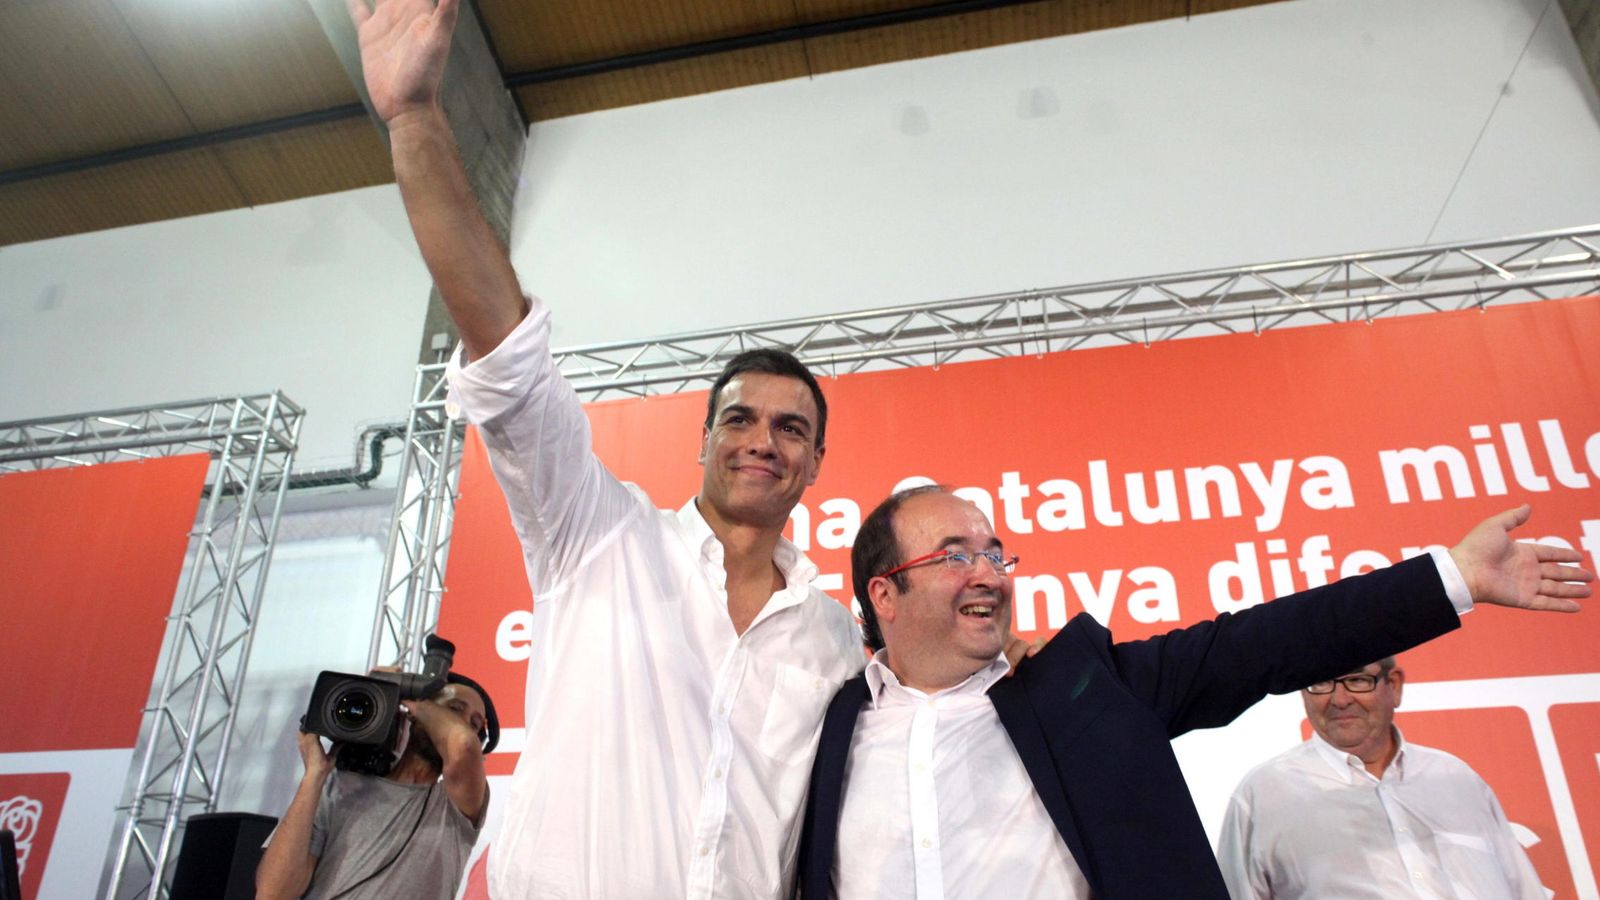 Foto: El líder del PSOE, Pedro Sánchez, acompañado del de los socialistas catalanes, Miquel Iceta. (Efe) 